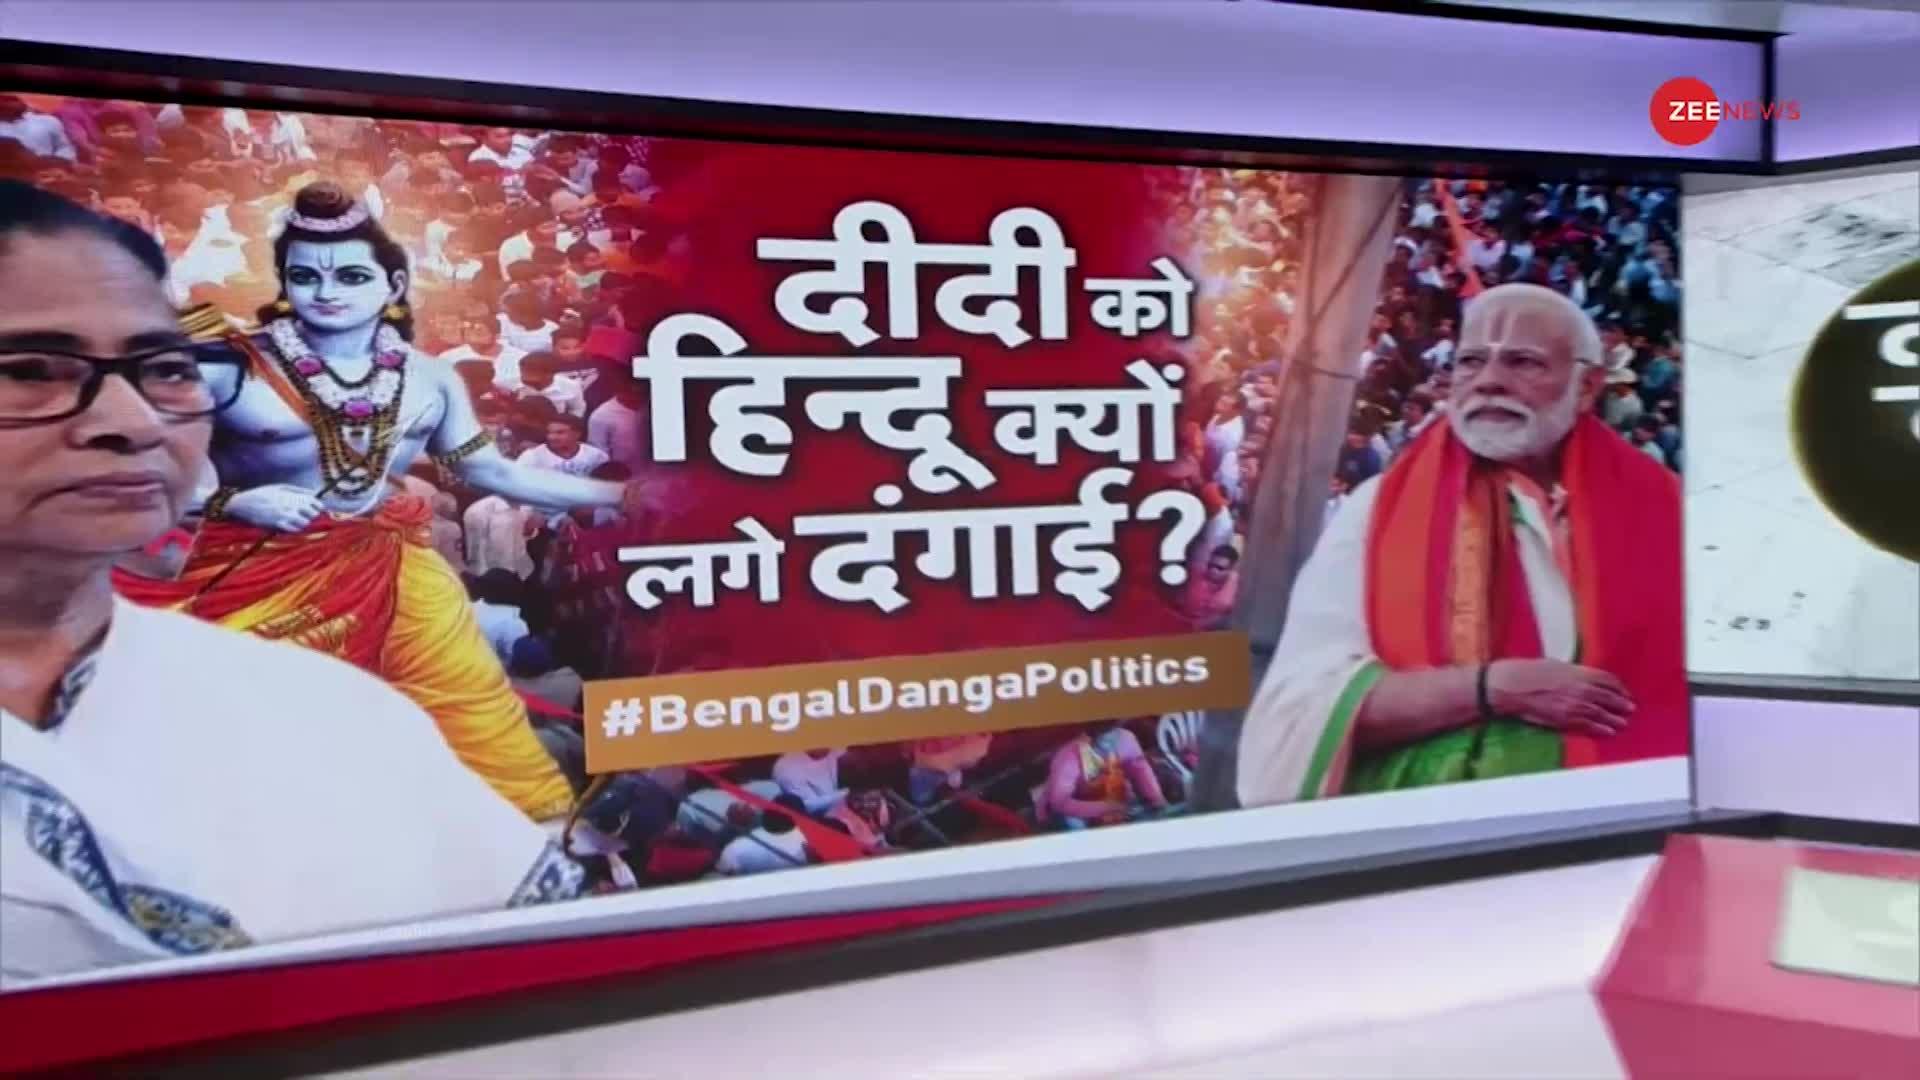 Taal Thok Ke: बंगाल के श्रद्धलुओं को कोर्ट जाना पड़ता है- PM मोदी